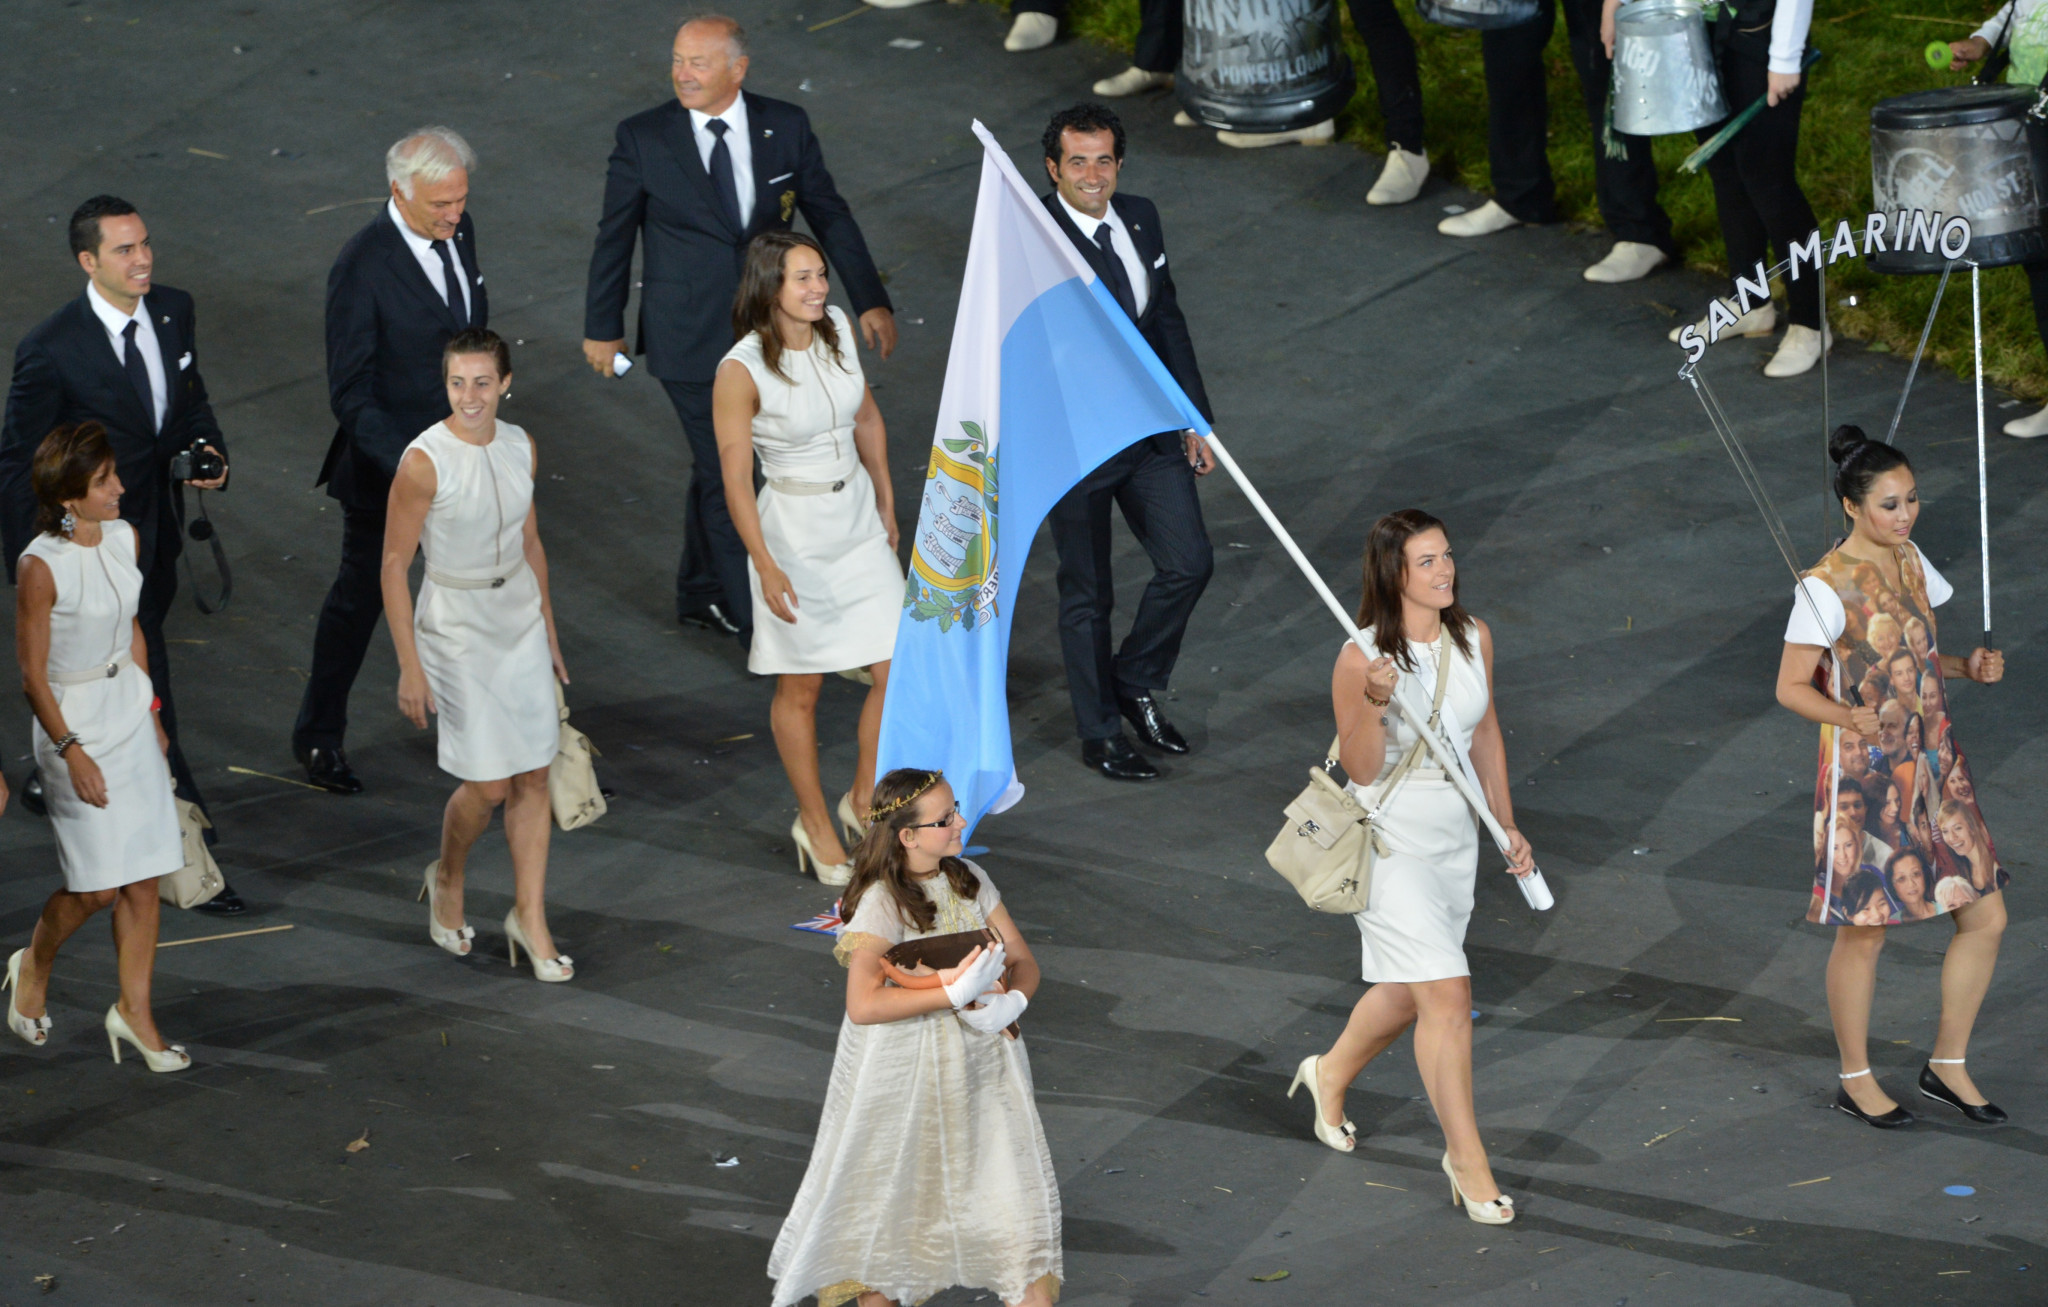 Alessandra Pirelli, vincitrice dell'oro nelle trappole a squadre miste ai Mondiali di Venezia, è stata la portabandiera di San Marino alle Olimpiadi di Londra 2012 © Getty Images